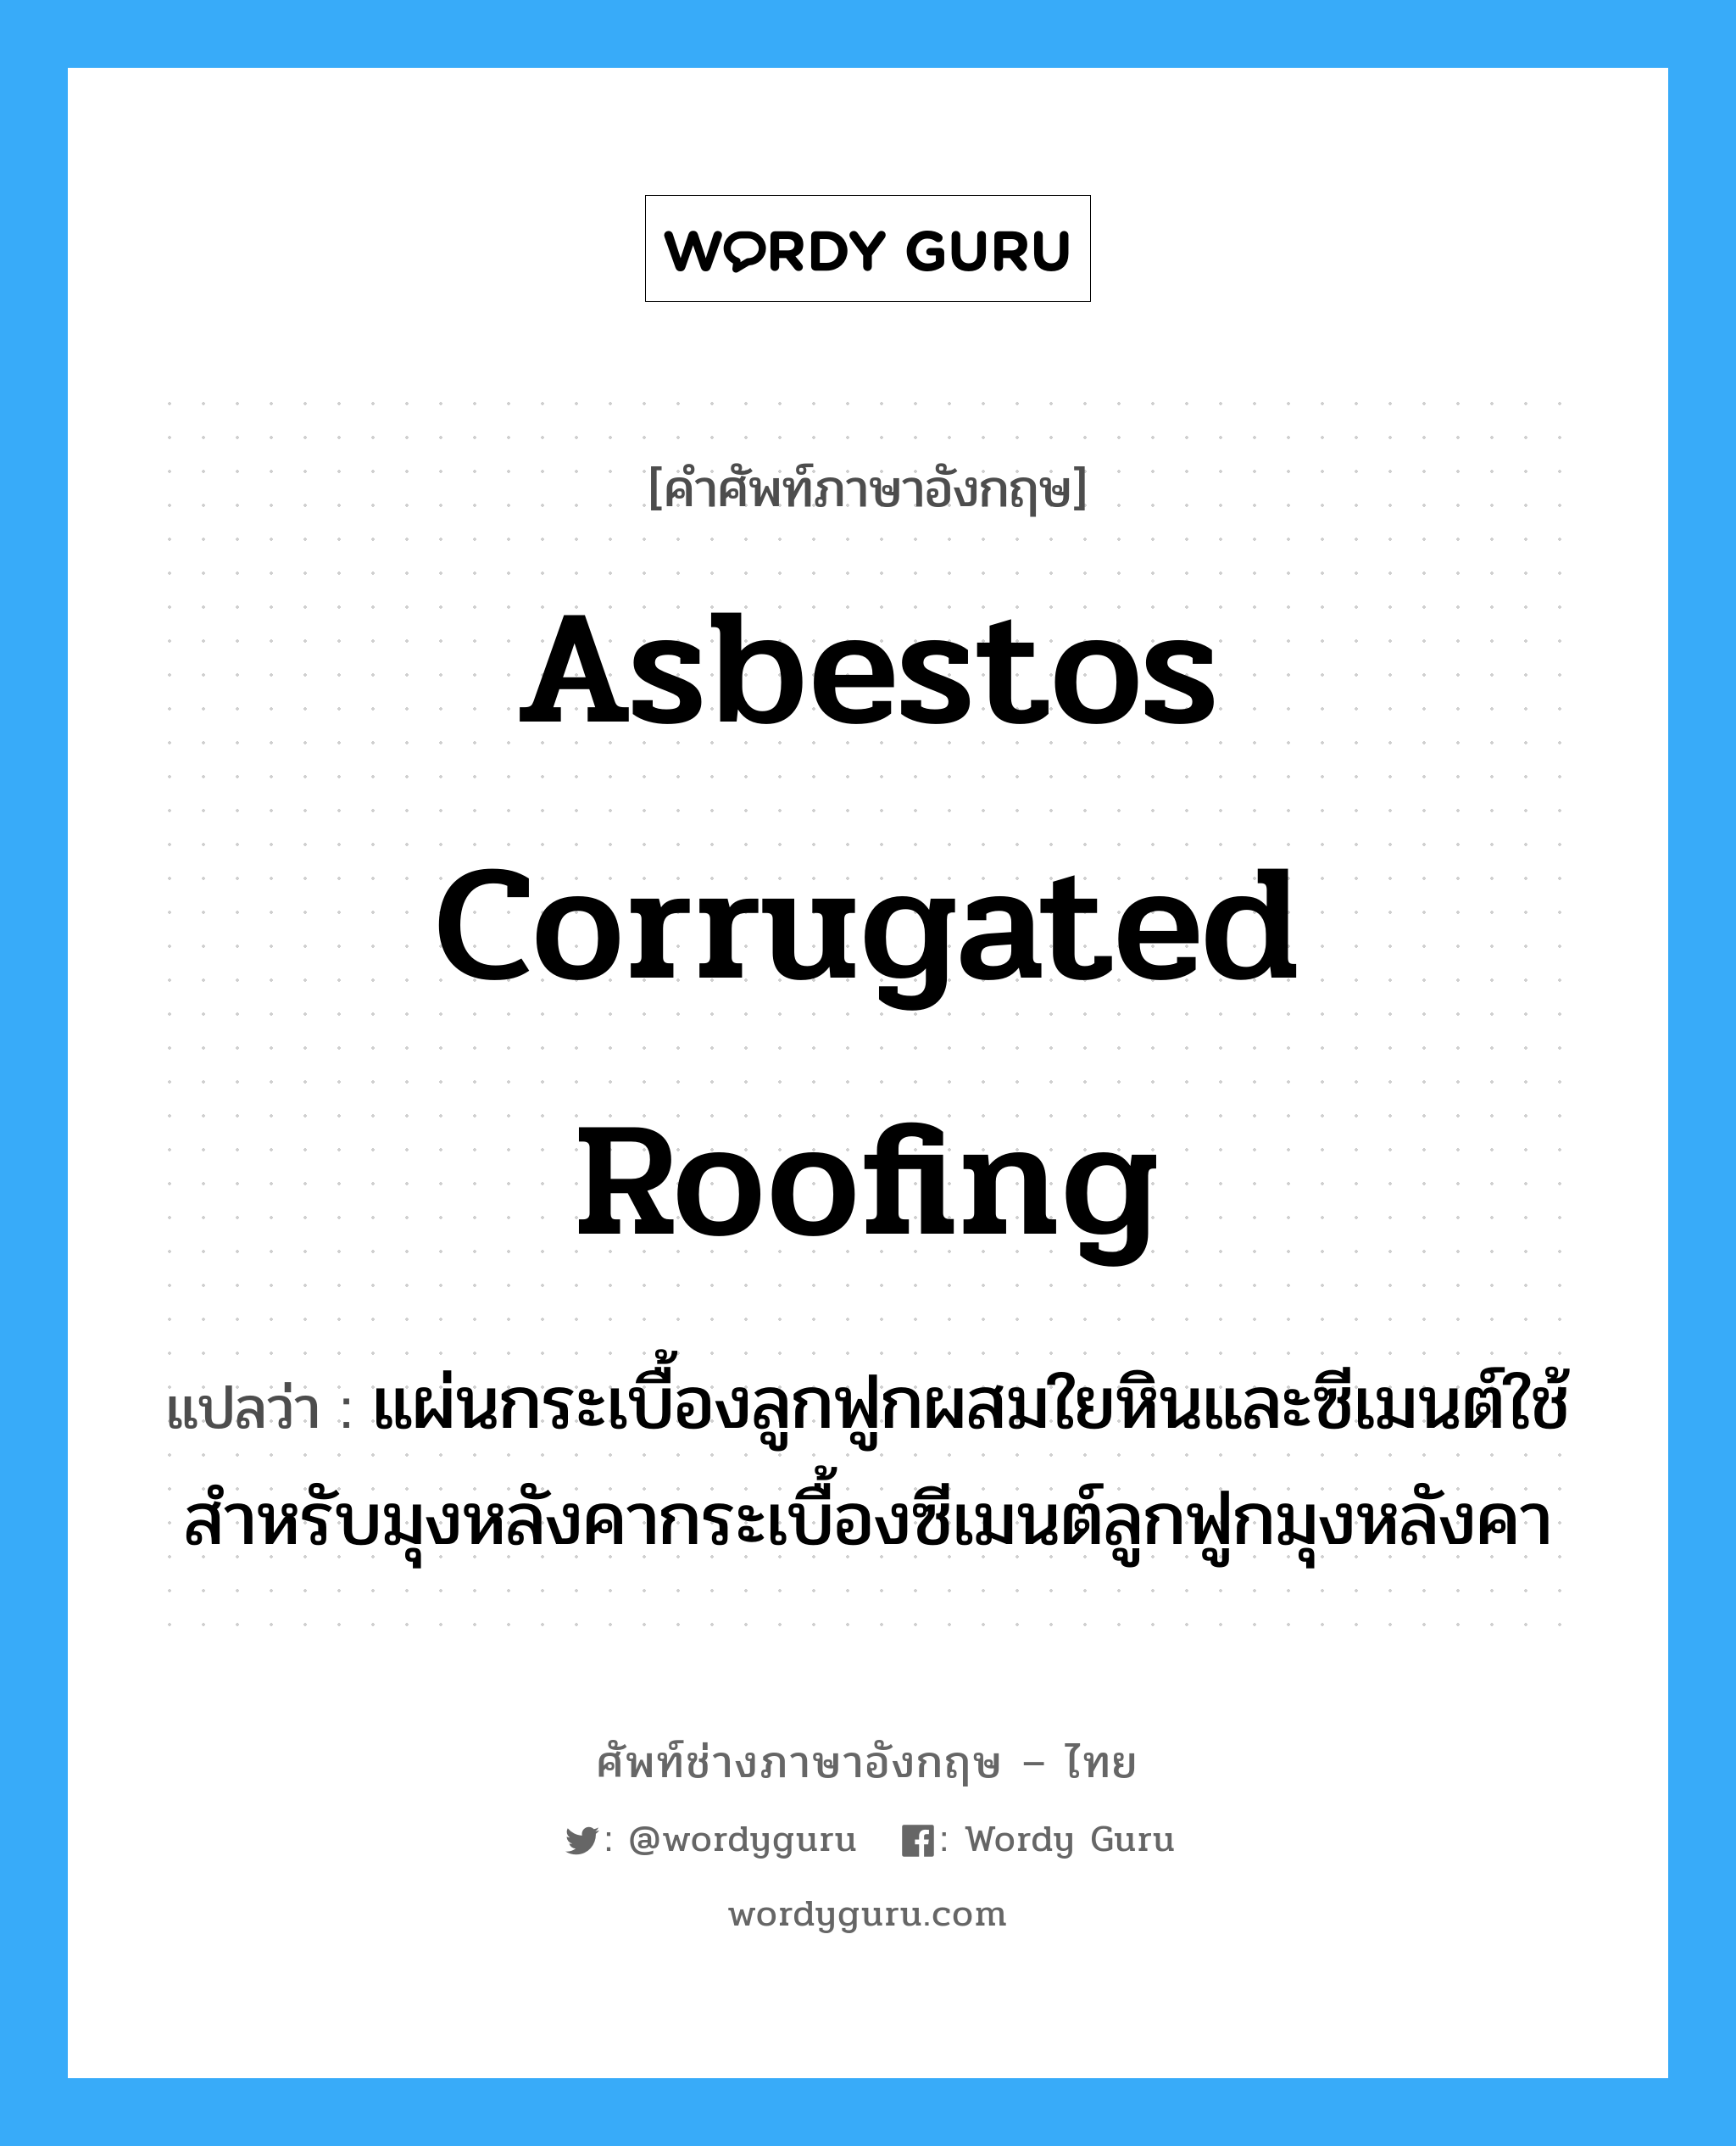 asbestos corrugated roofing แปลว่า?, คำศัพท์ช่างภาษาอังกฤษ - ไทย asbestos corrugated roofing คำศัพท์ภาษาอังกฤษ asbestos corrugated roofing แปลว่า แผ่นกระเบื้องลูกฟูกผสมใยหินและซีเมนต์ใช้สำหรับมุงหลังคากระเบื้องซีเมนต์ลูกฟูกมุงหลังคา